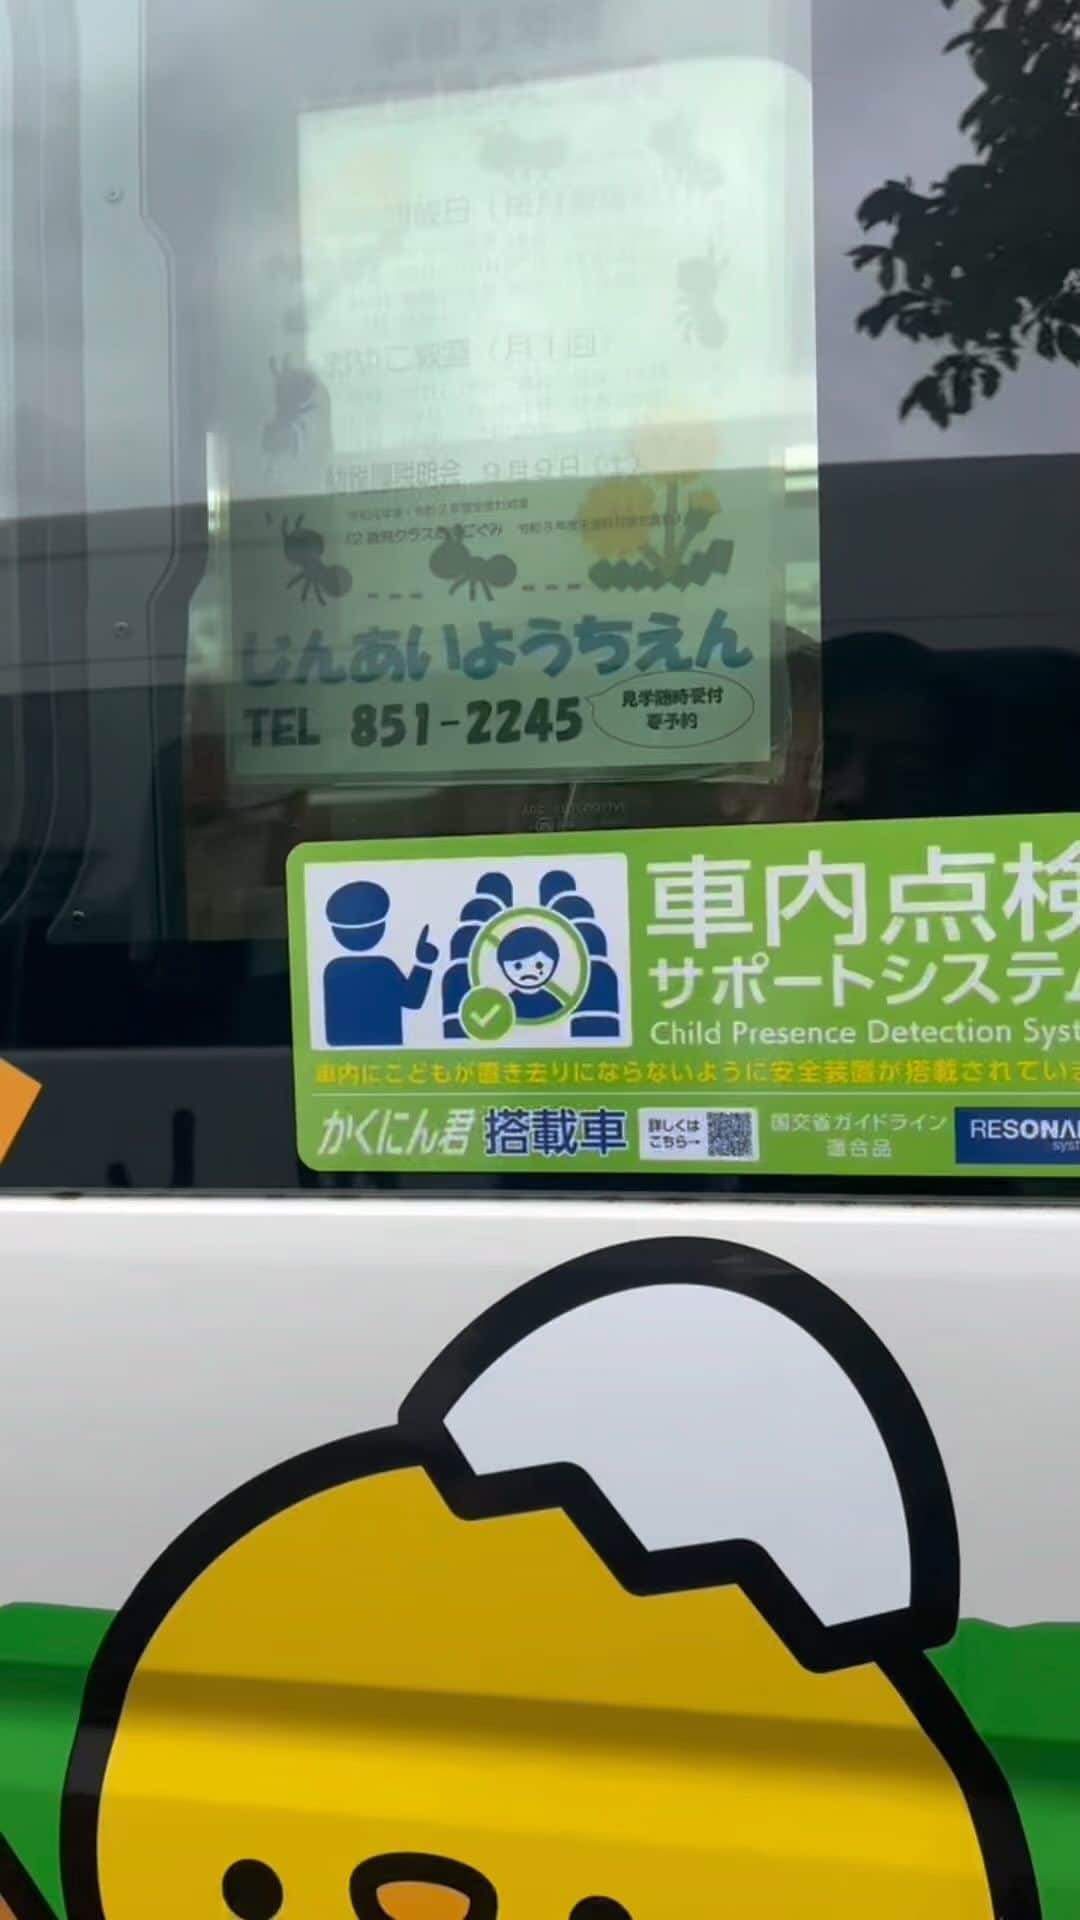 小泉進次郎のインスタグラム：「横須賀の幼稚園やこども園が集まる子育てフェア。  こどもの置き去り防止装置が導入された園バスを視察させてもらいました。まだ全ての園バスには導入されていませんが、国の補助もあるので実装が進んでいくことを期待しています。横須賀の幼稚園が集まるので、親の立場からすればどこにこどもを入園させるか比較しながら情報収集できるありがたいイベントです。準備された皆さん、職員・先生方、暑い中お疲れ様でした。  #横須賀市 #子育てフェア #横須賀市立幼稚園認定こども園協会  #横須賀学院 #子育て支援 #幼稚園バス #小泉進次郎」